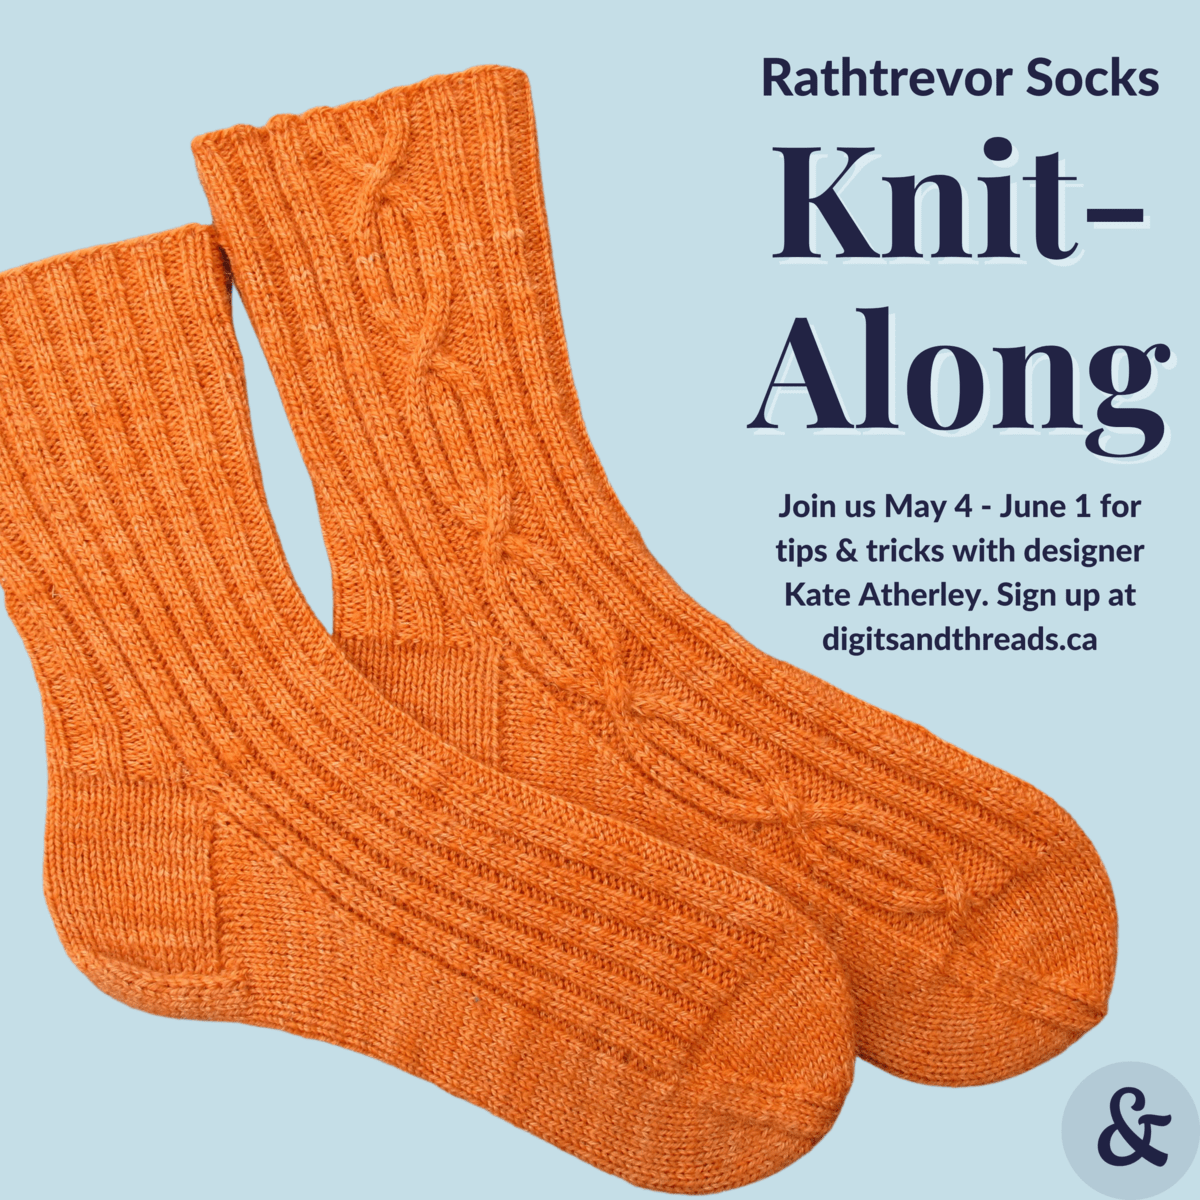 Image description: Pair of orange socks on a light-blue background with words, including Rathtrevor Socks Knit-Along.